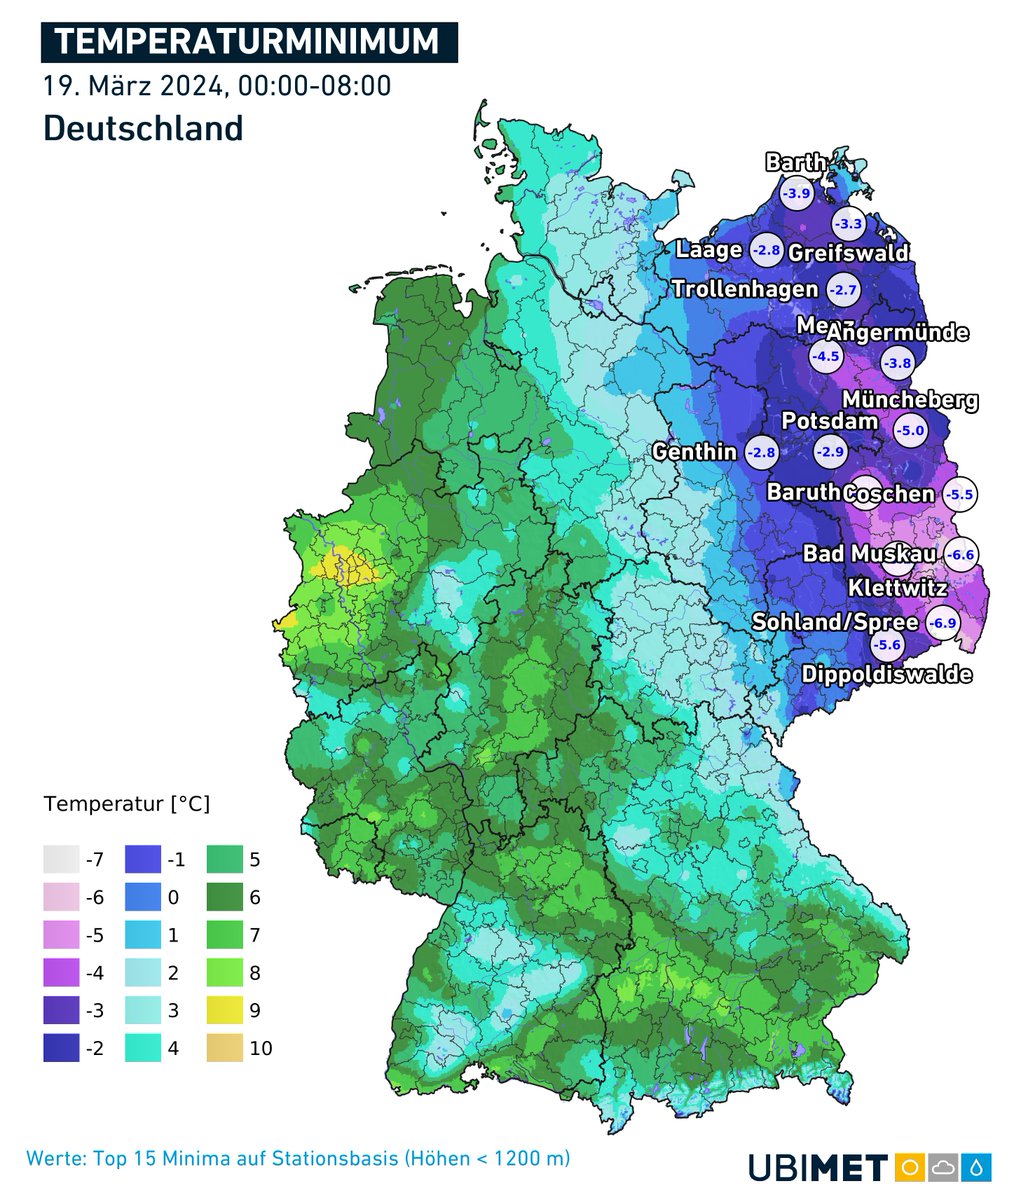 Wo war es vergangene Nacht frostig? Gut zu sehen auf nachfolgender Karte, von der Lübecker Buch bis ins Vogtland sowie östlich davon. 
Kältepol war Hoyerswerda mit -7°. Für Mitte März sind solche Temperaturen in der Nacht aber normal.